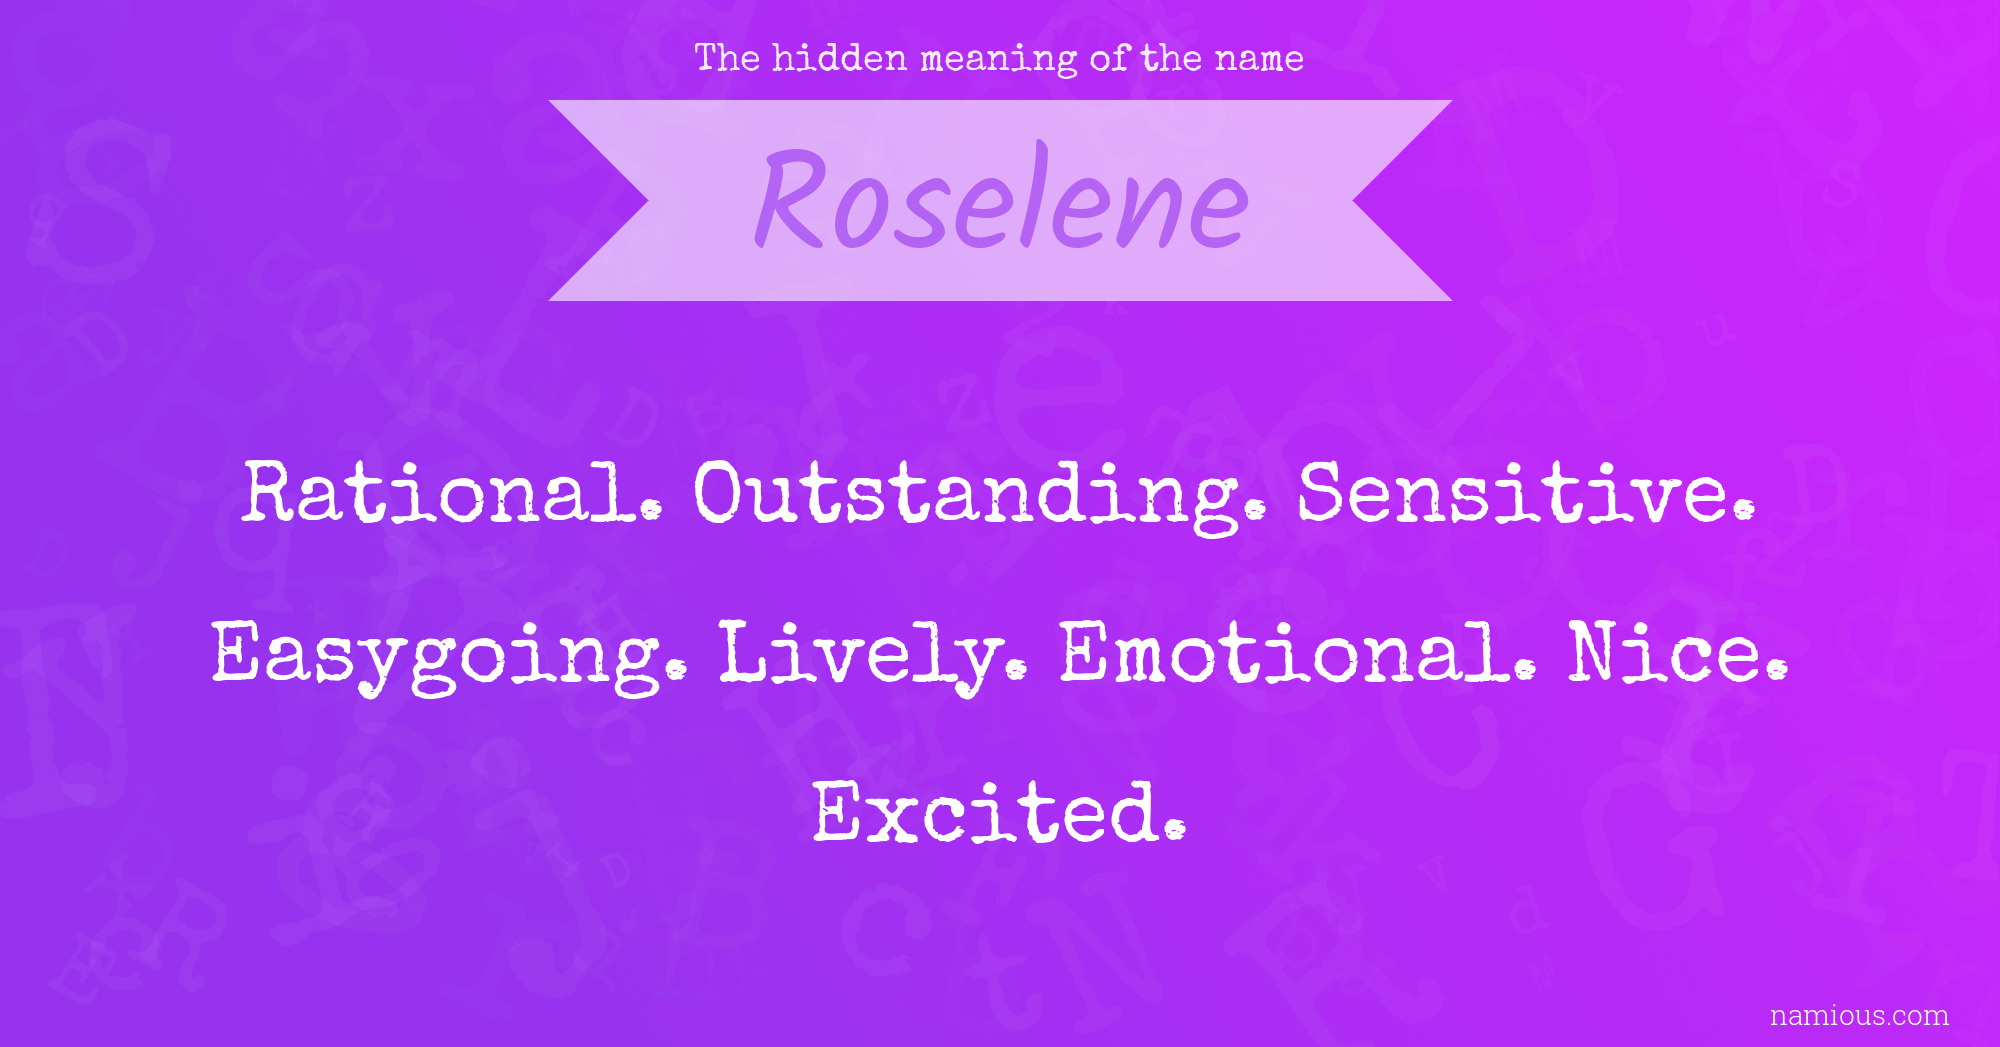 The hidden meaning of the name Roselene